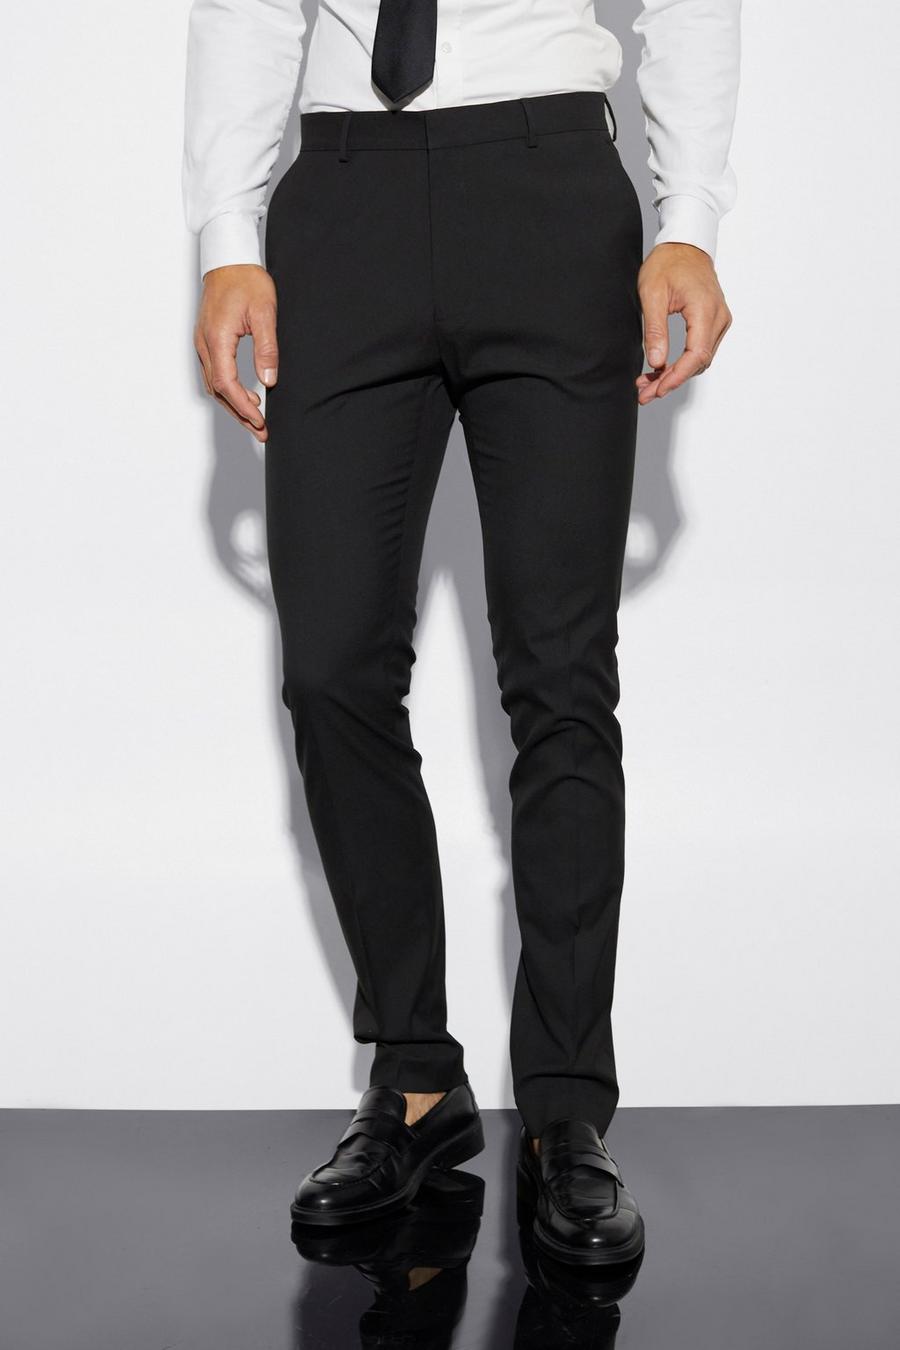 שחור negro מכנסי חליפה סקיני לגברים גבוהים